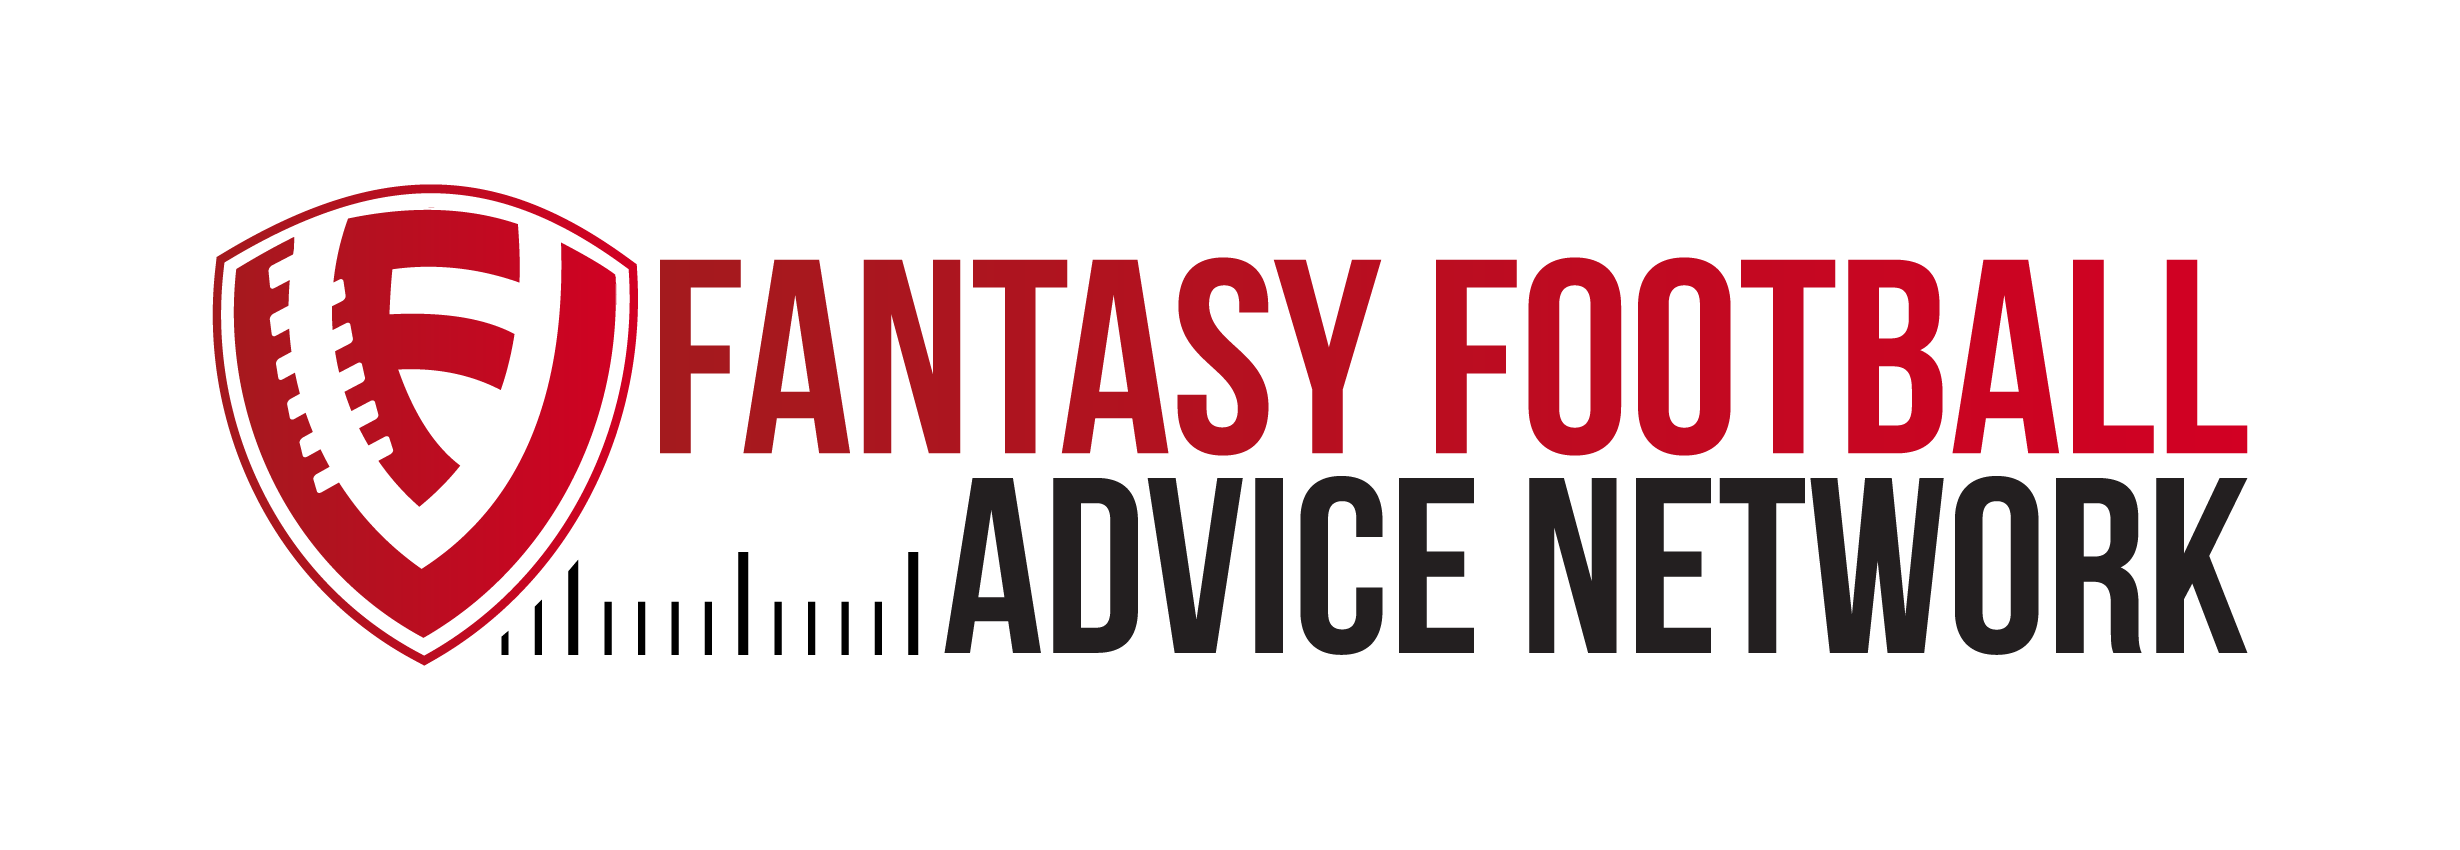 Fantasy Football Advice Network